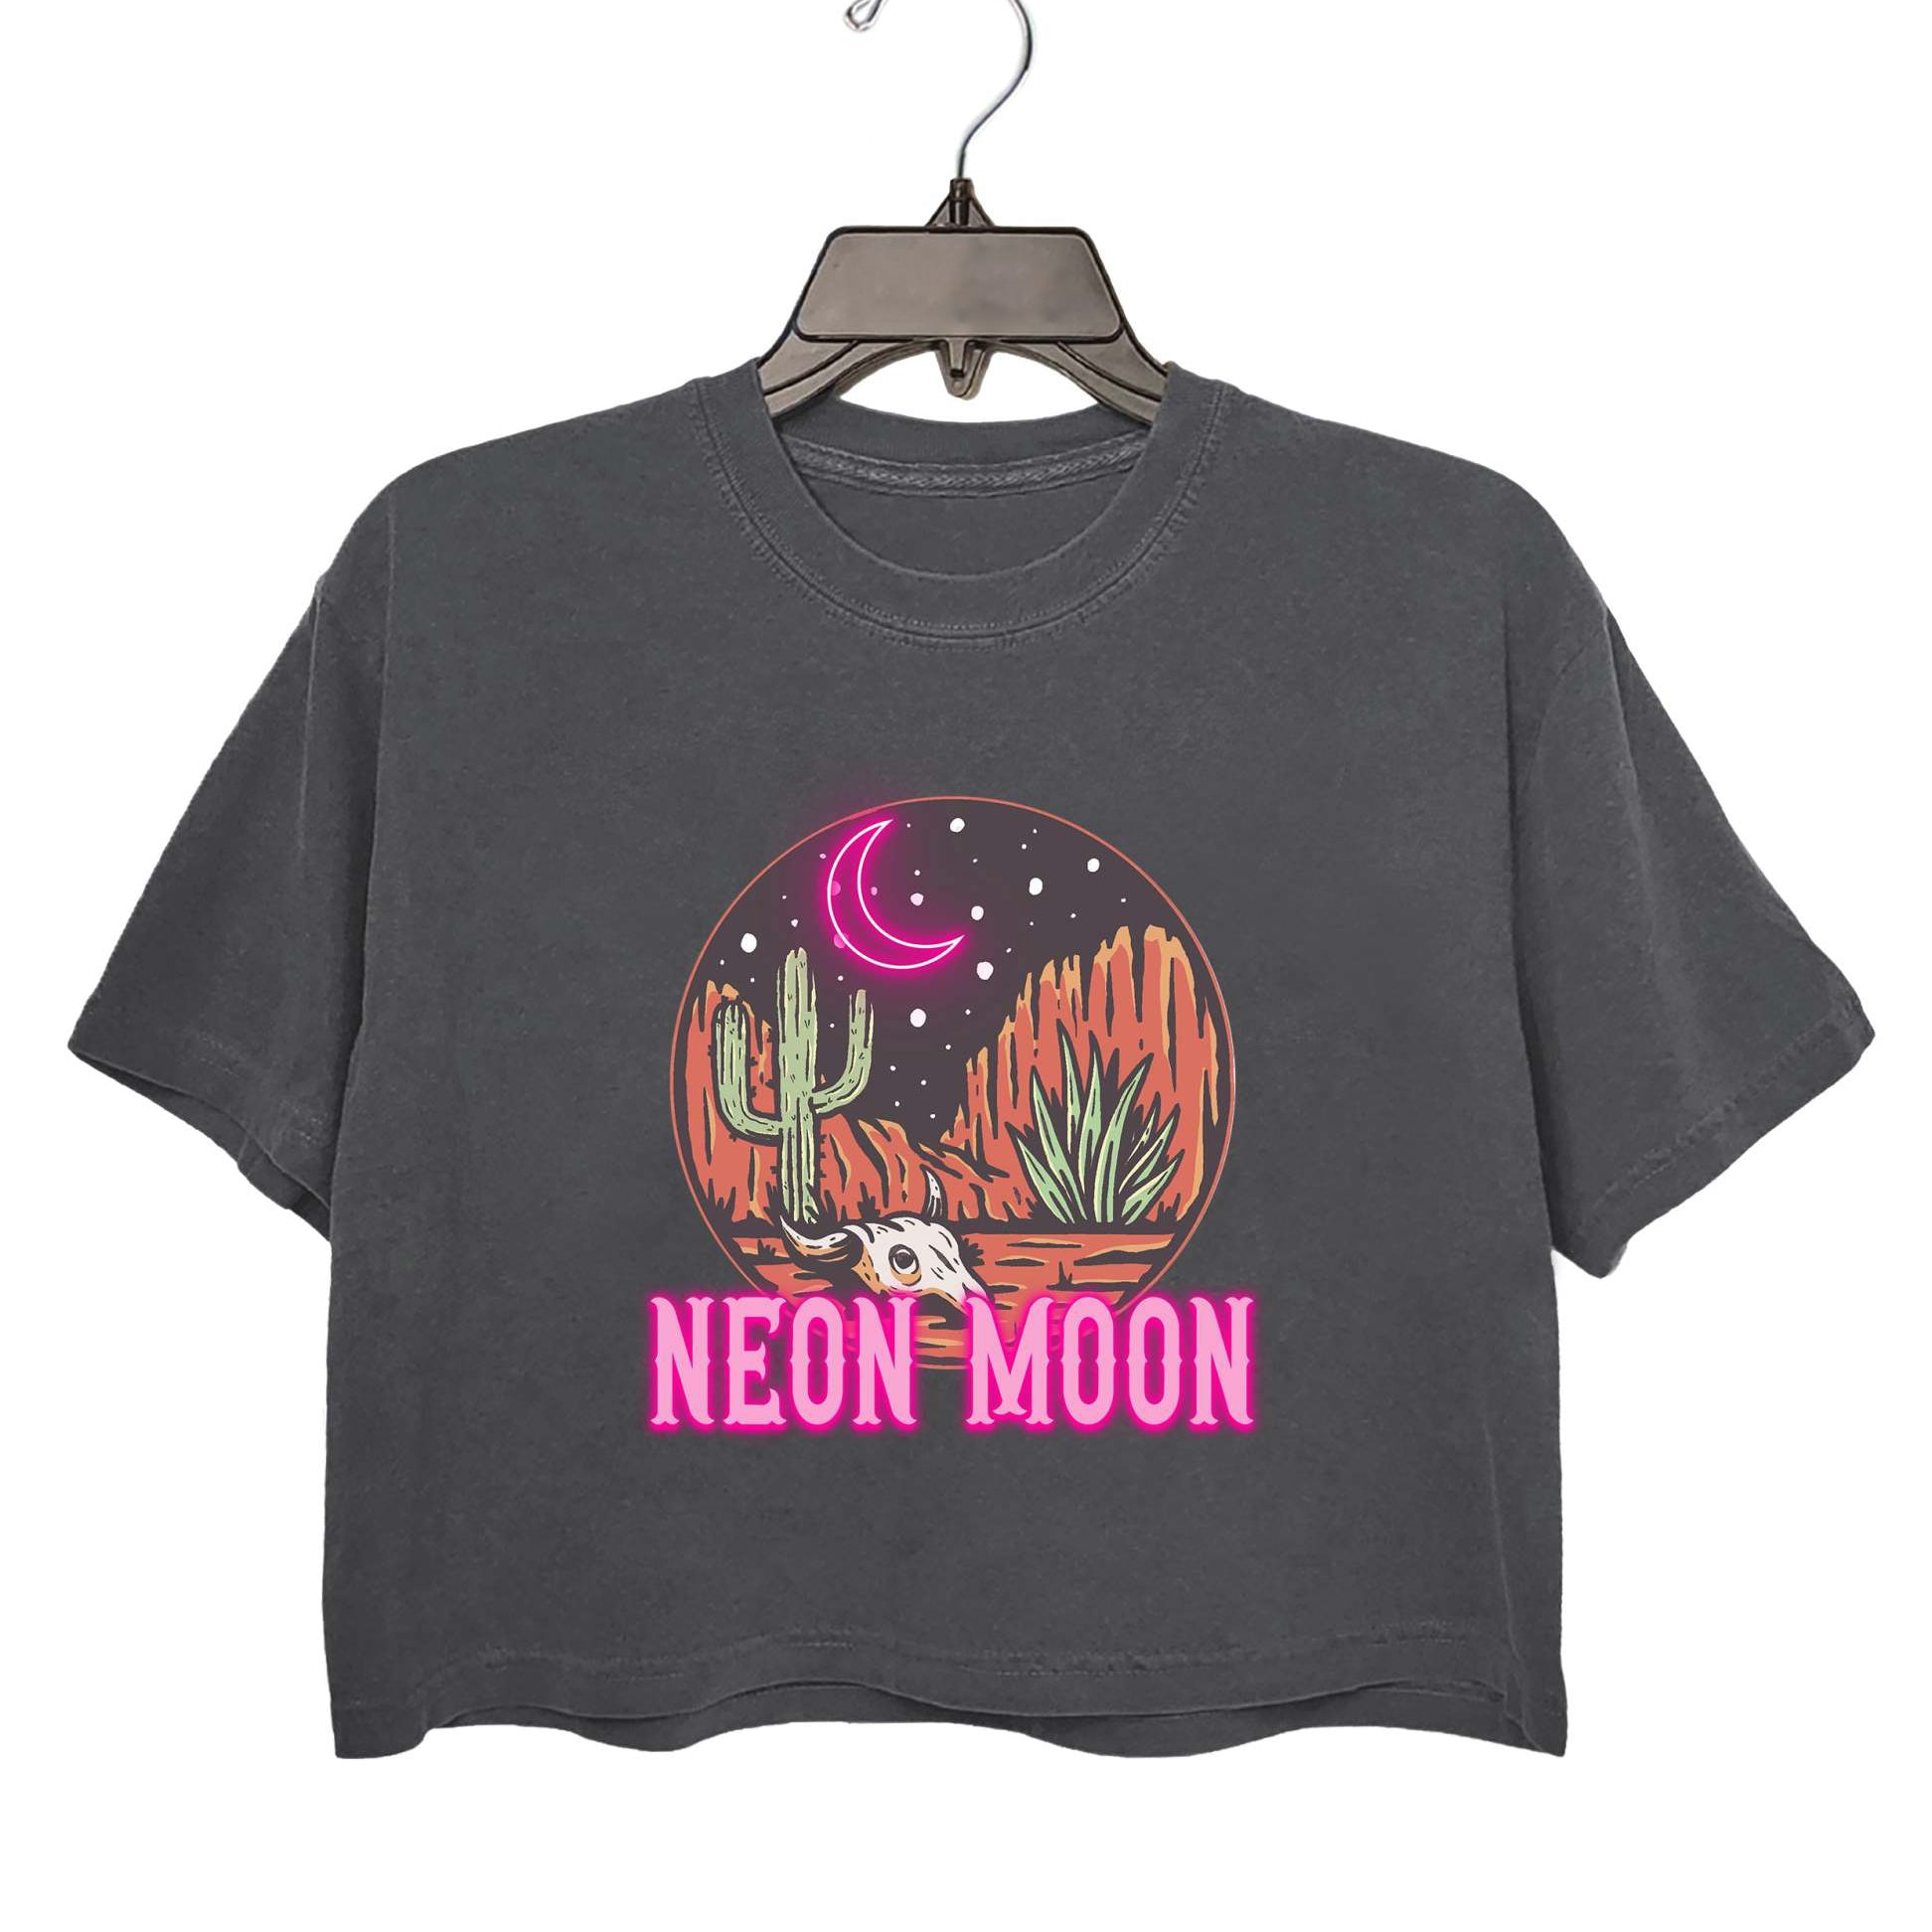 Retro Neon Moon Western Crop Top For Women